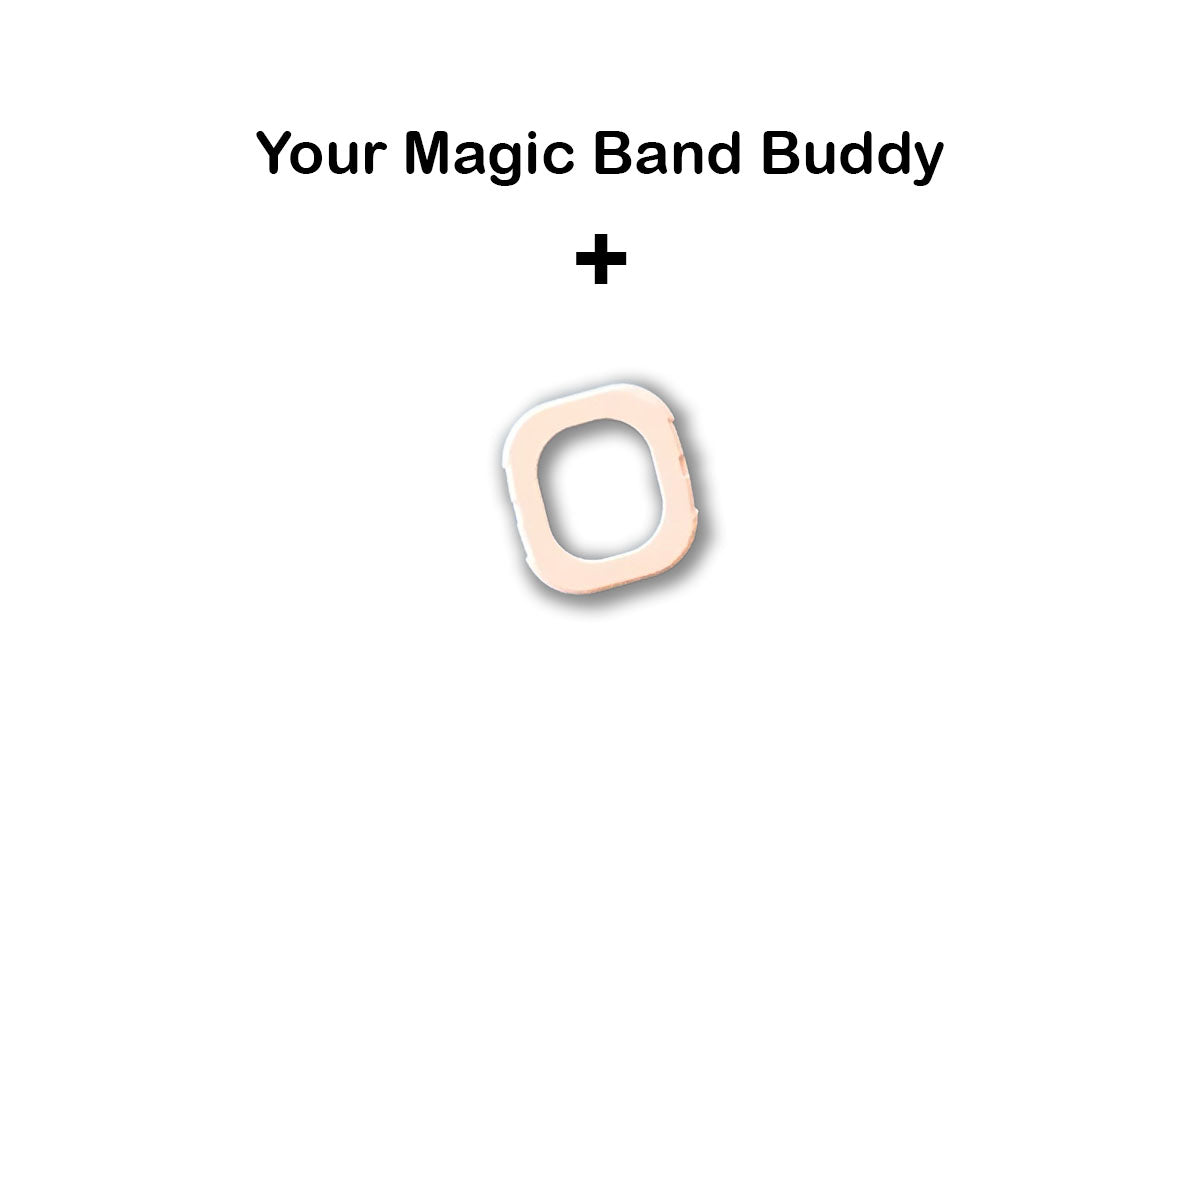 Gold Key Magic Band Buddy